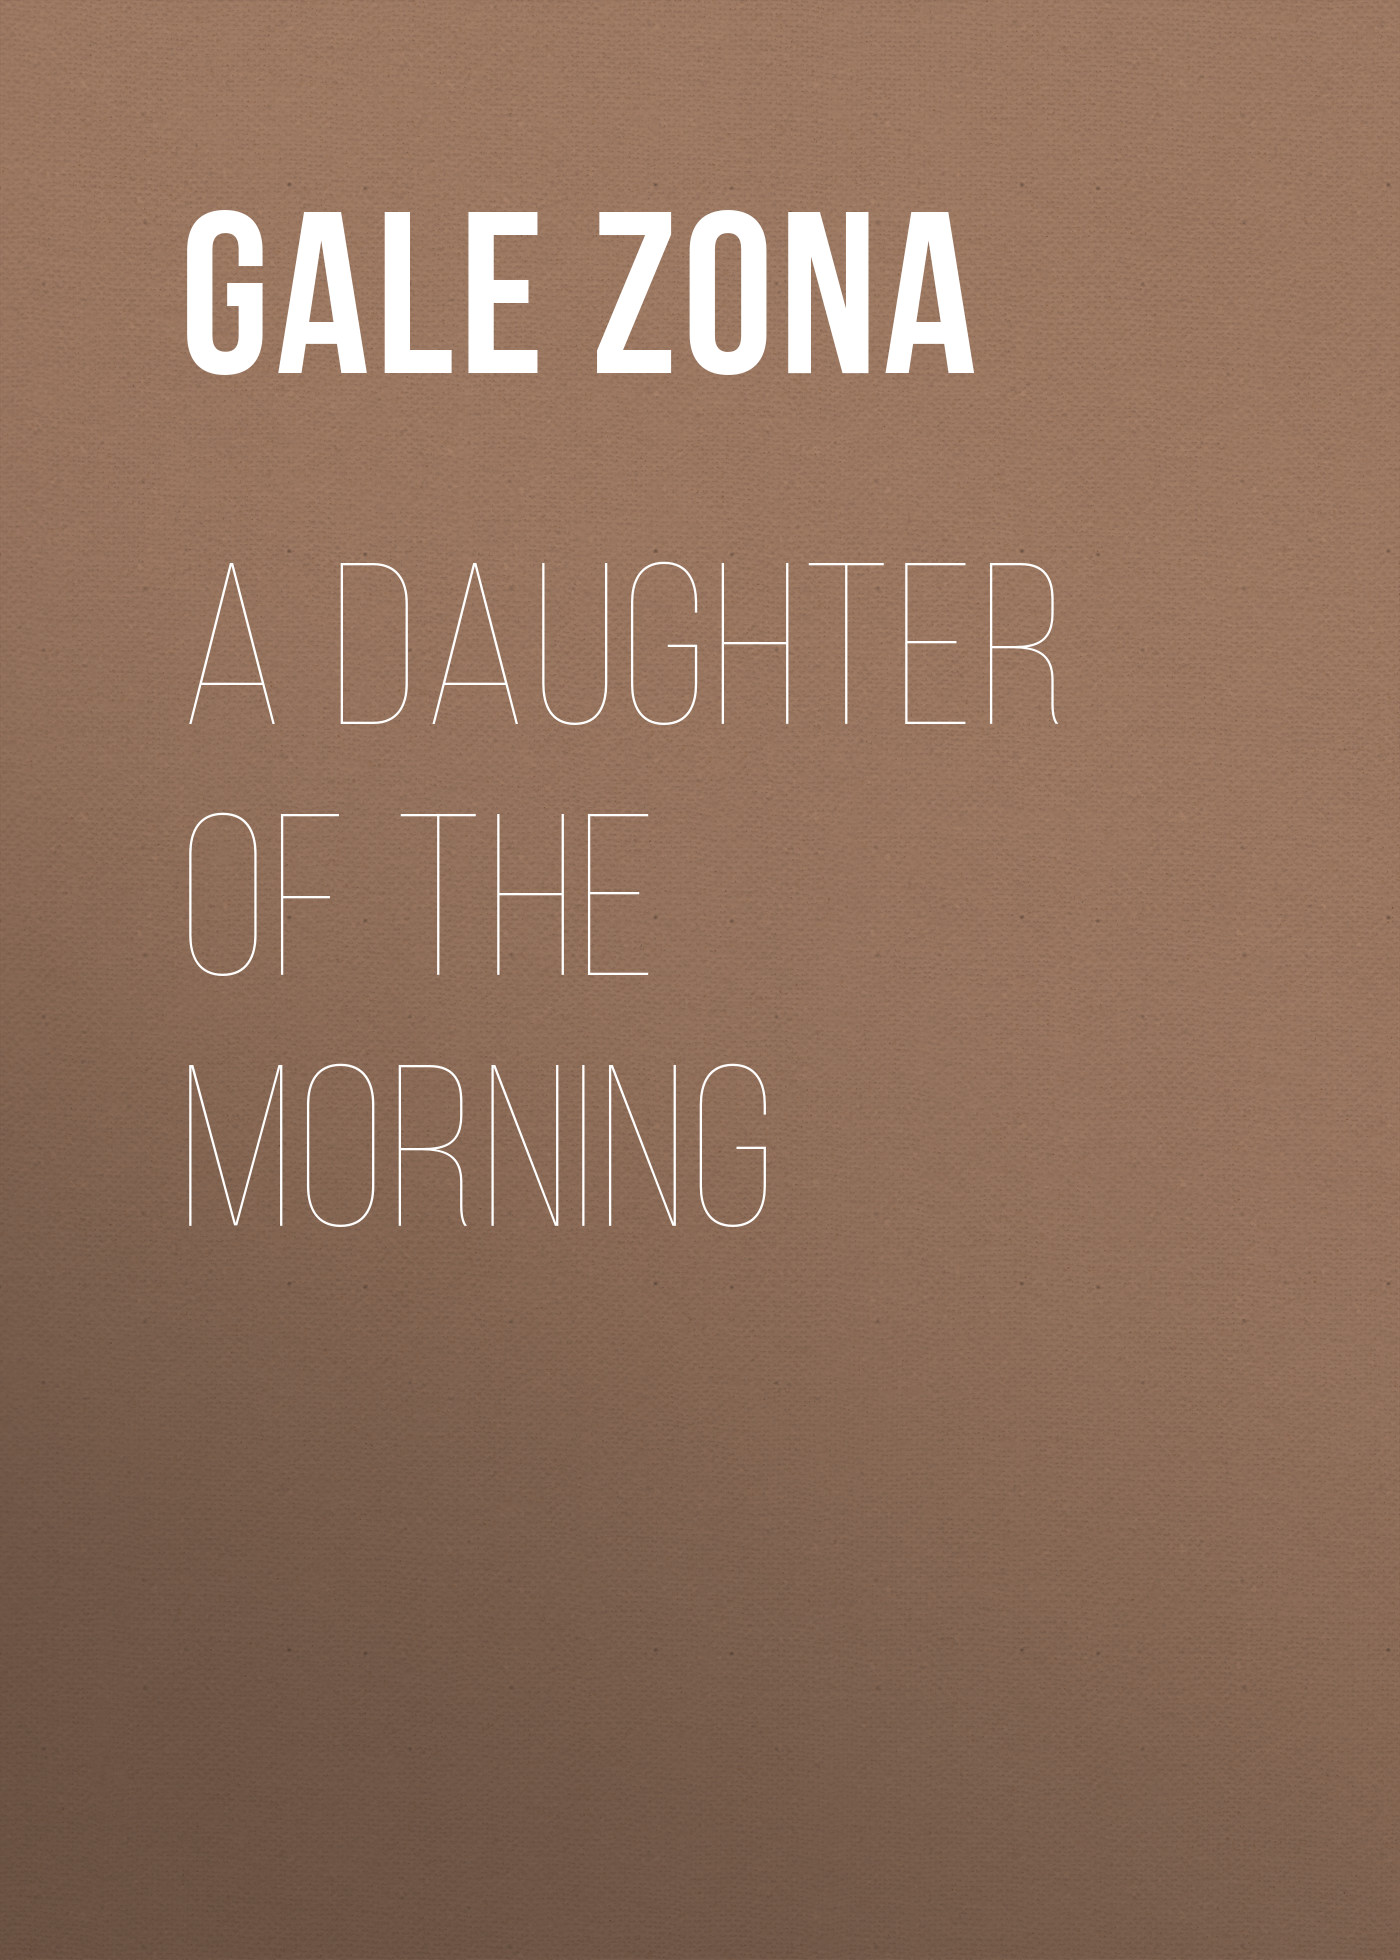 Книга A Daughter of the Morning из серии , созданная Zona Gale, может относится к жанру Зарубежная старинная литература, Зарубежная классика. Стоимость электронной книги A Daughter of the Morning с идентификатором 24858939 составляет 0 руб.